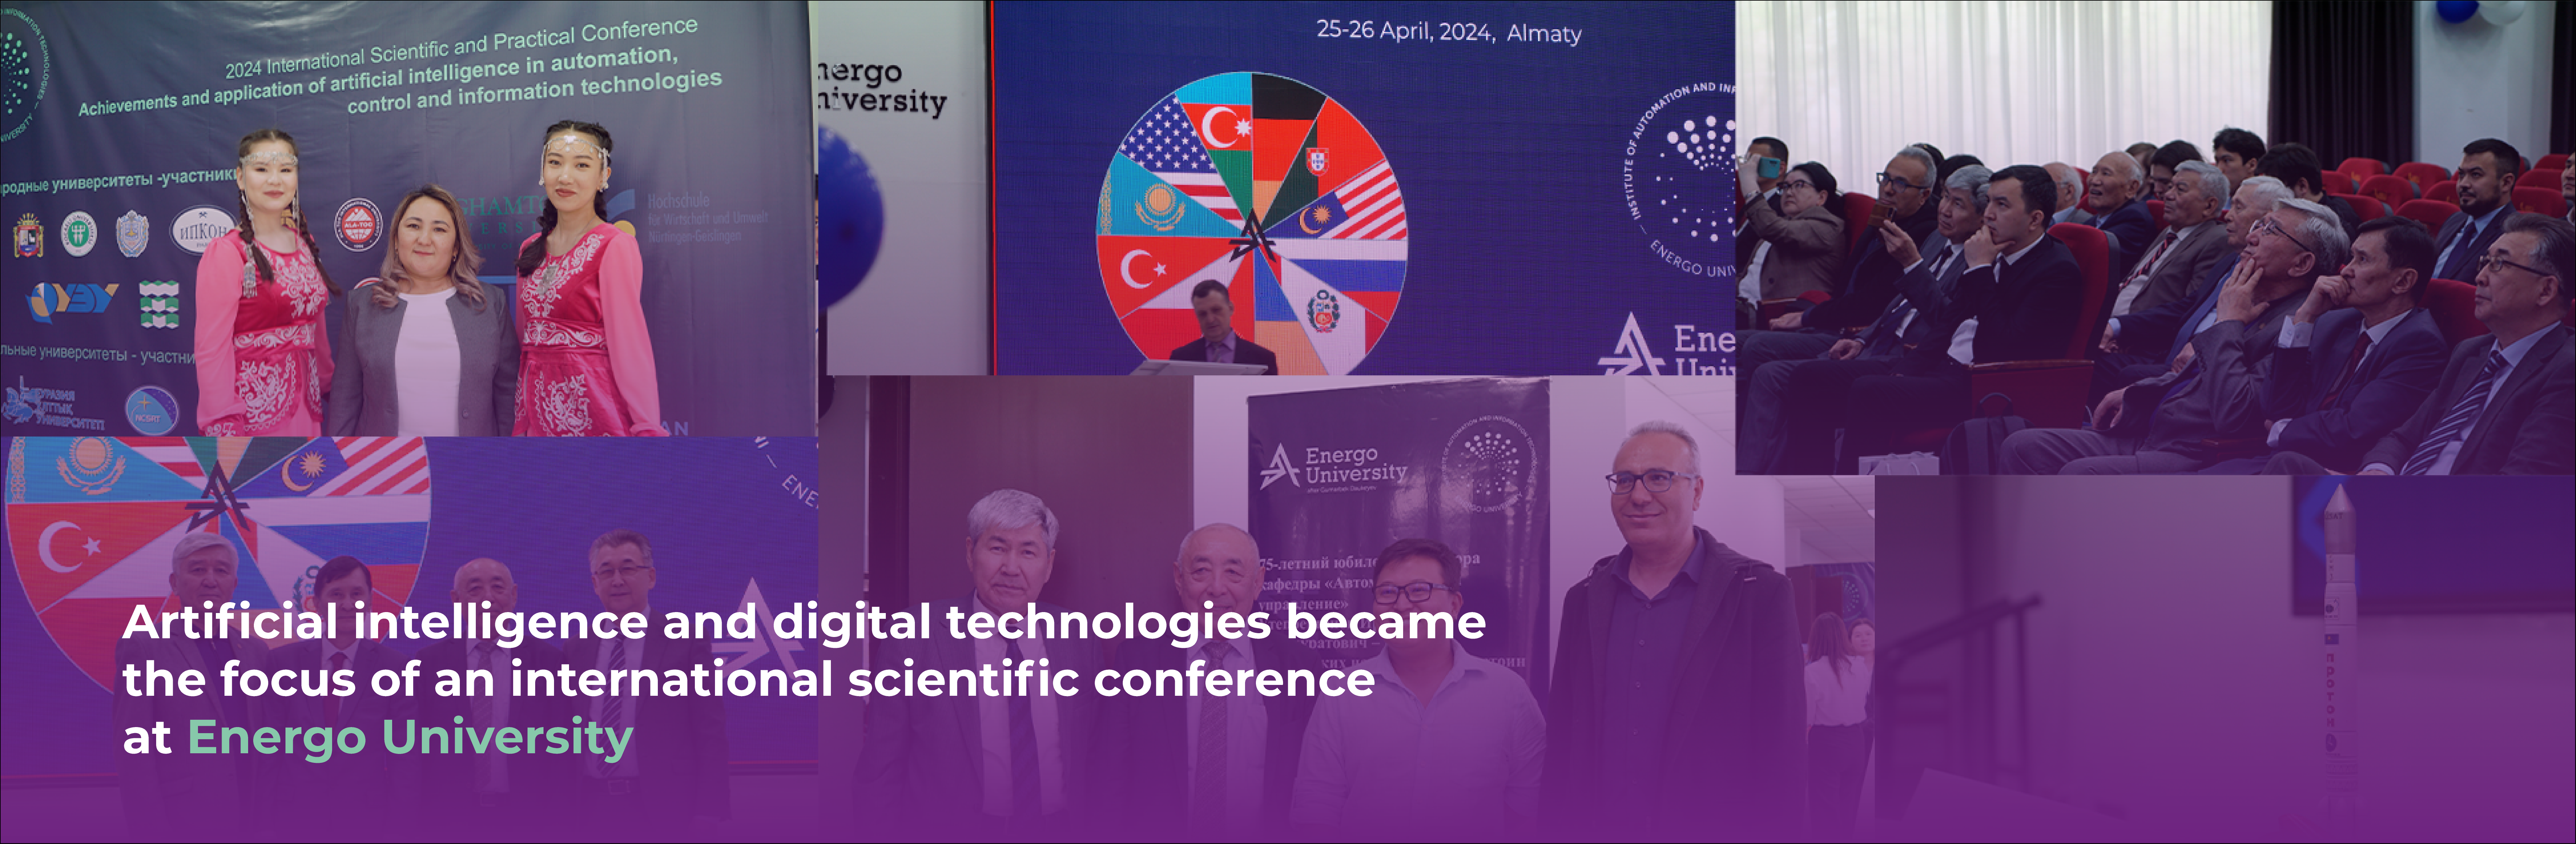 Искусственный интеллект и цифровые технологии стали темами международной научной конференции в Energo University 